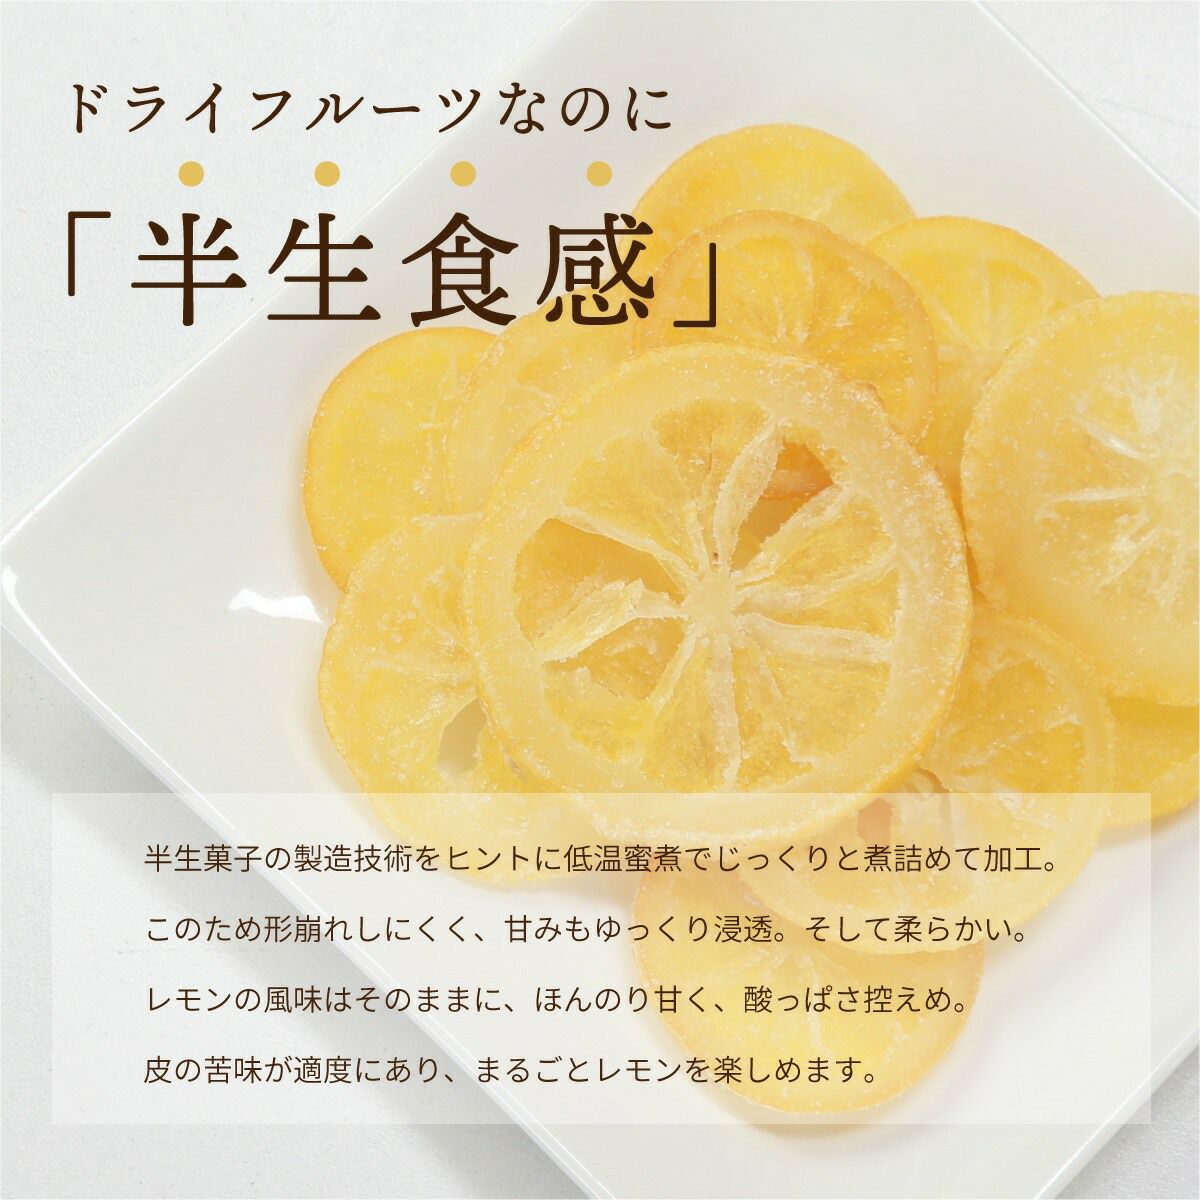 ドライフルーツ 国産 輪切り レモン 200g x 2袋 特長3